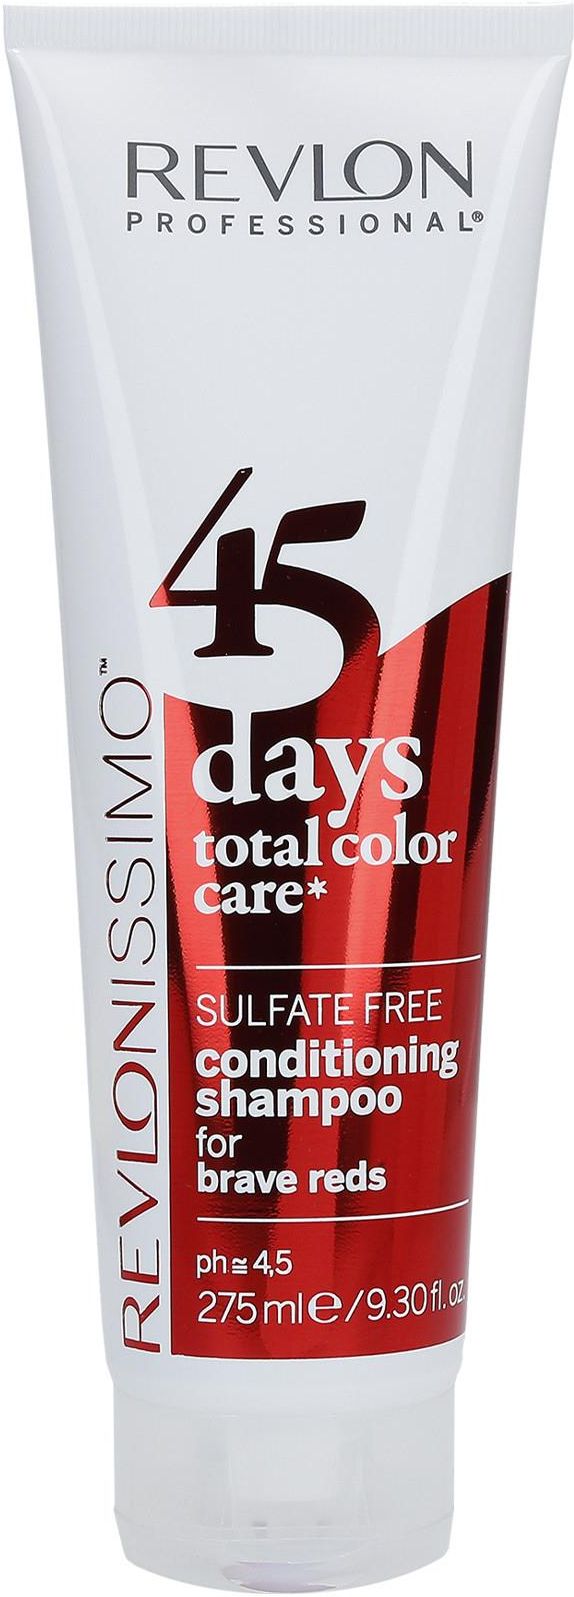 revlon 45 days szampon i odżywka 2w1 opinie